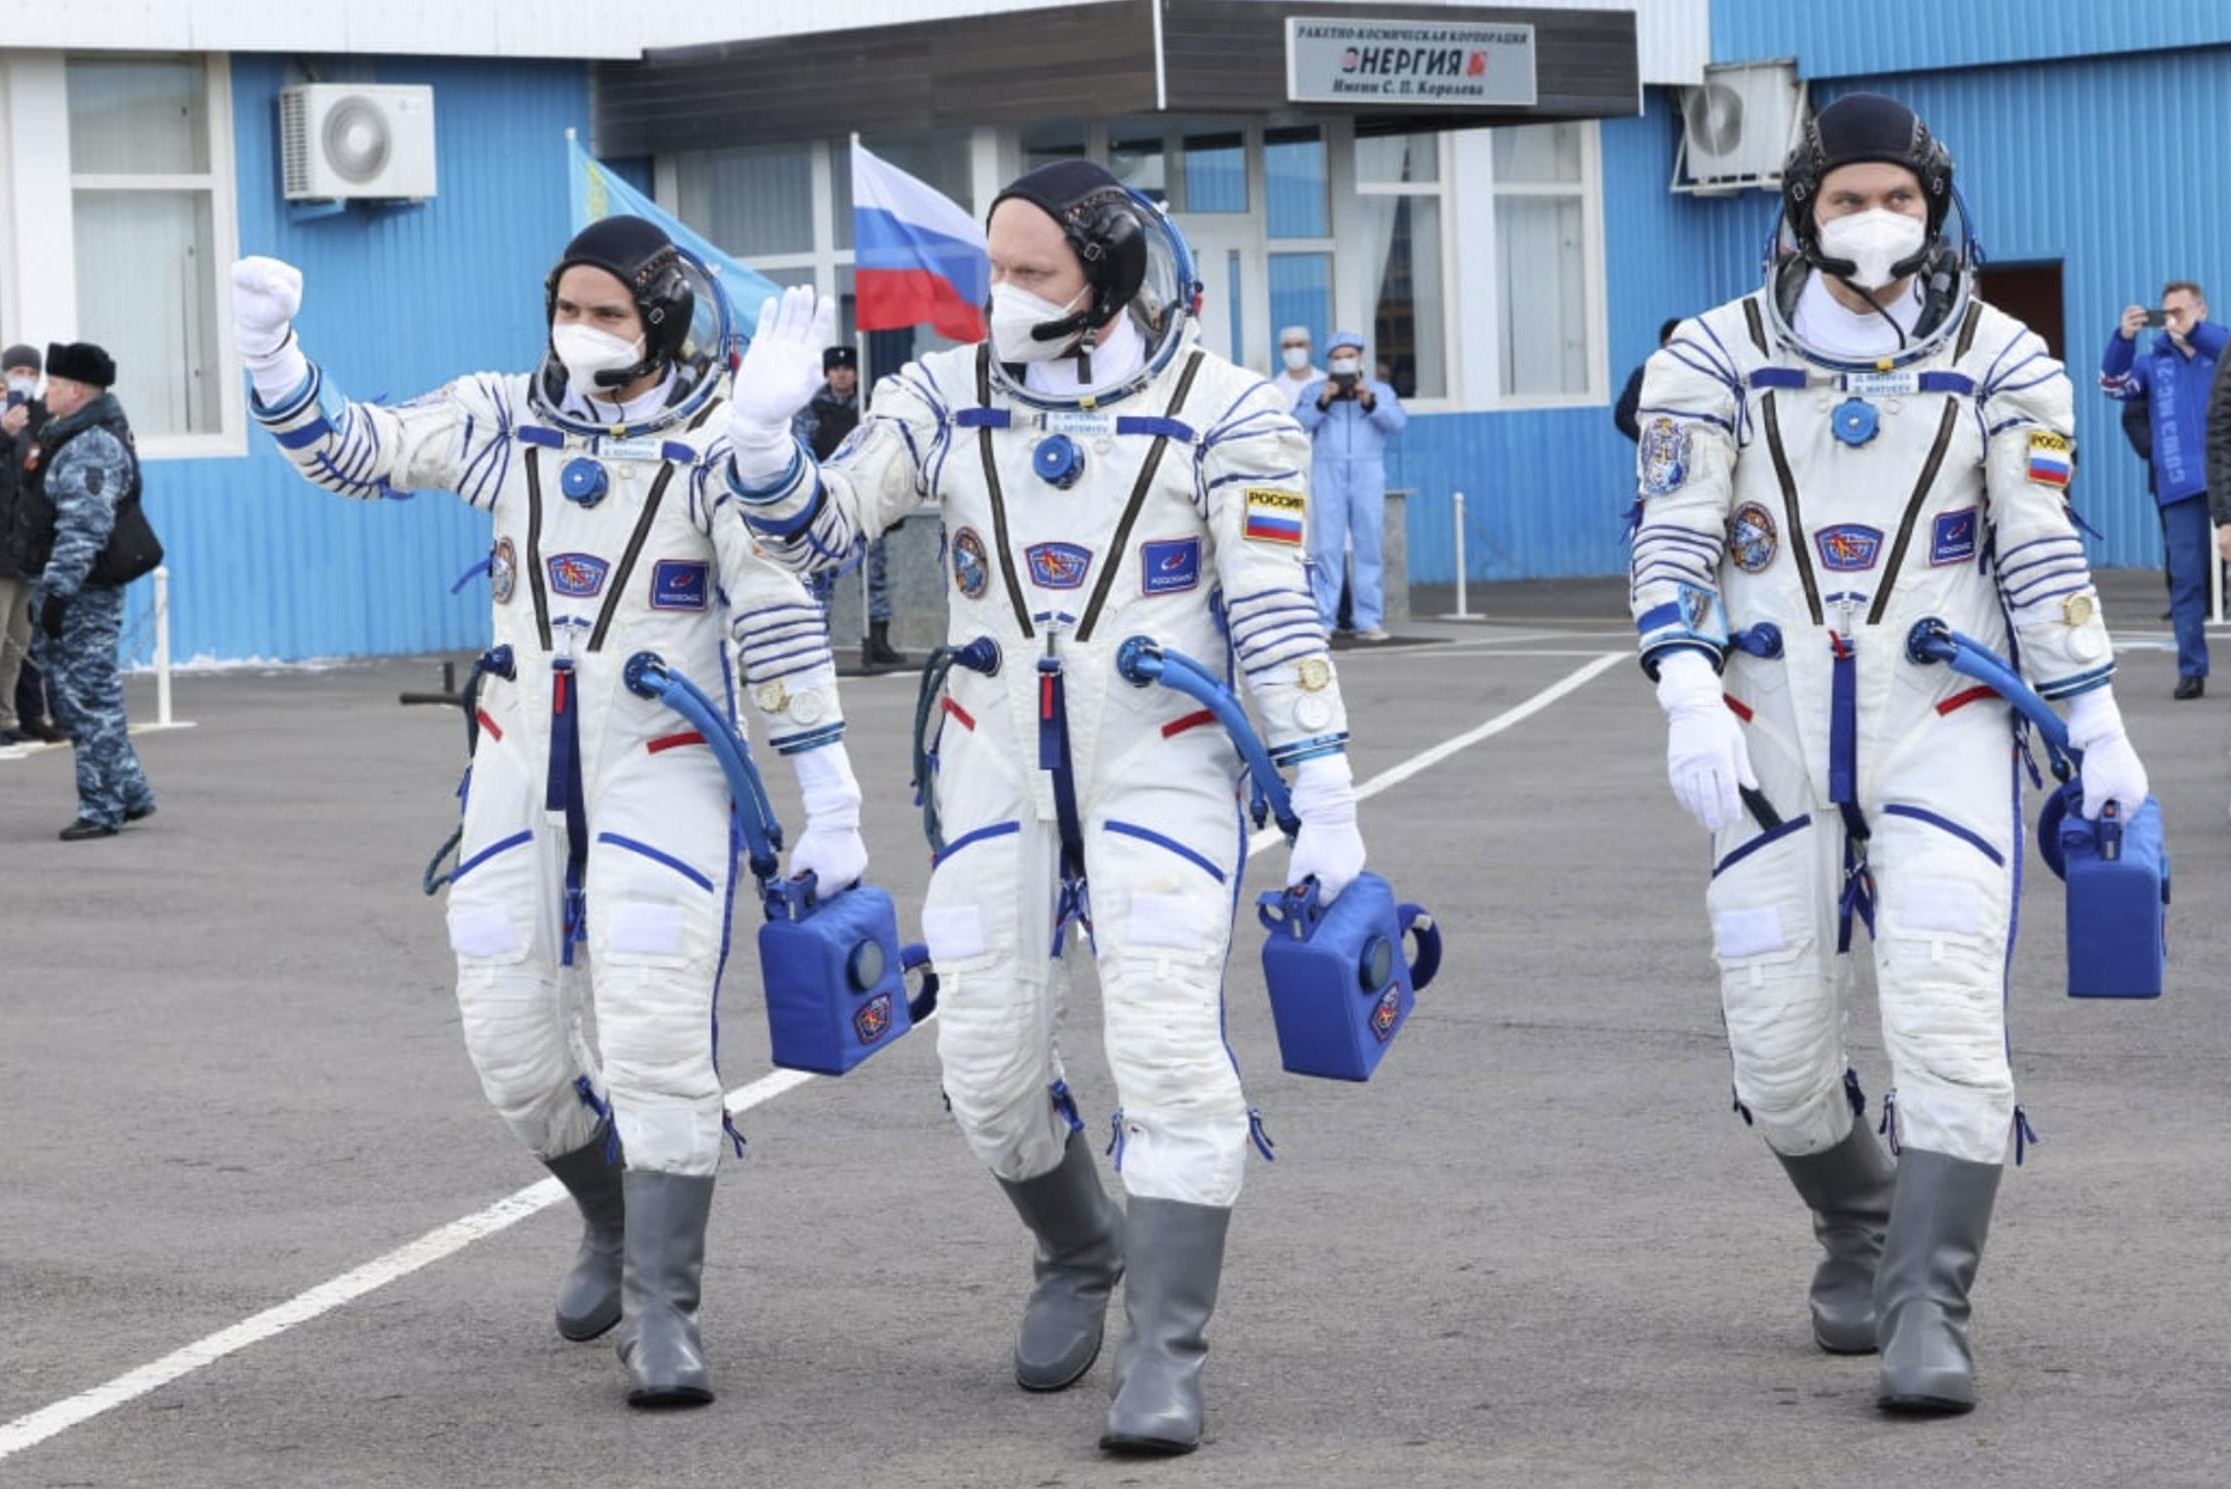 Tre astronauti arrivano alla Stazione Spaziale Internazionale